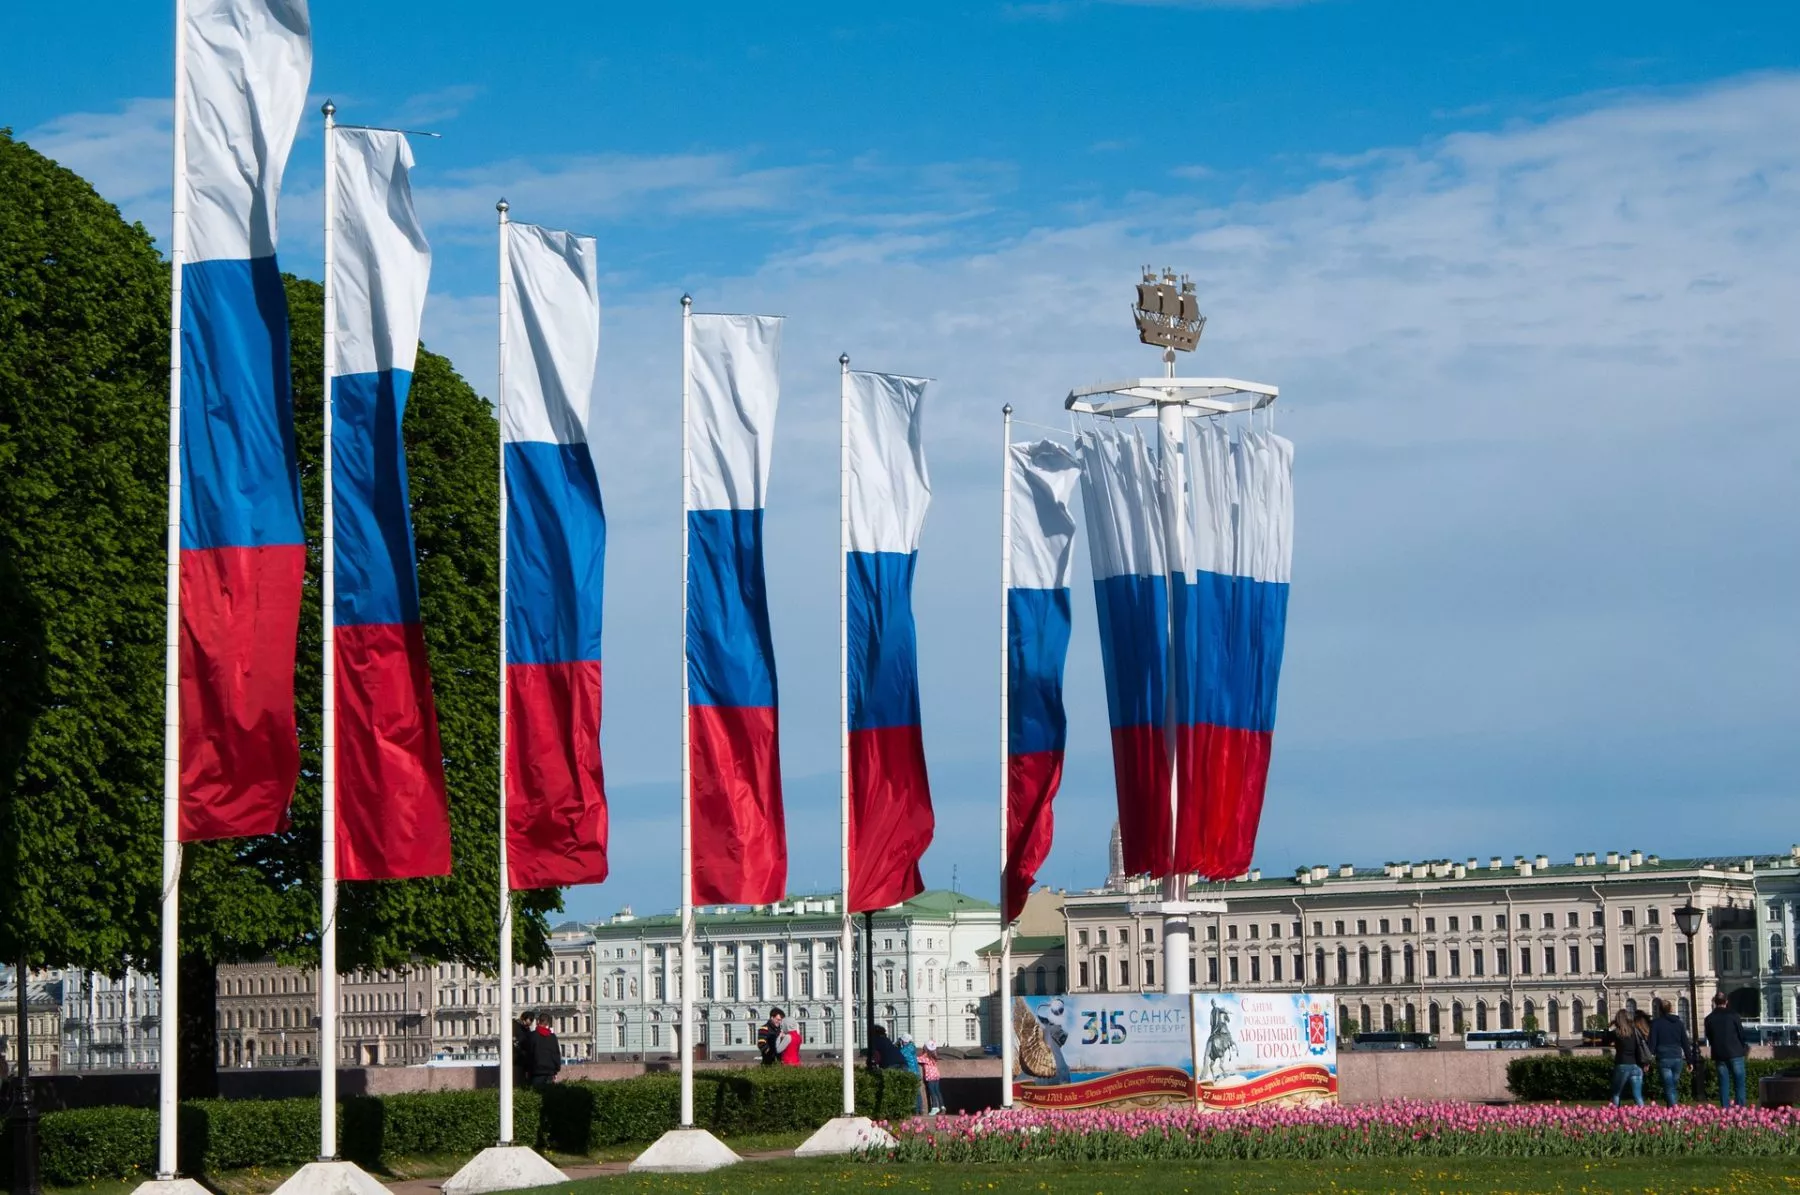 Rusland legaliseert crypto, komt dat door de westerse sancties?